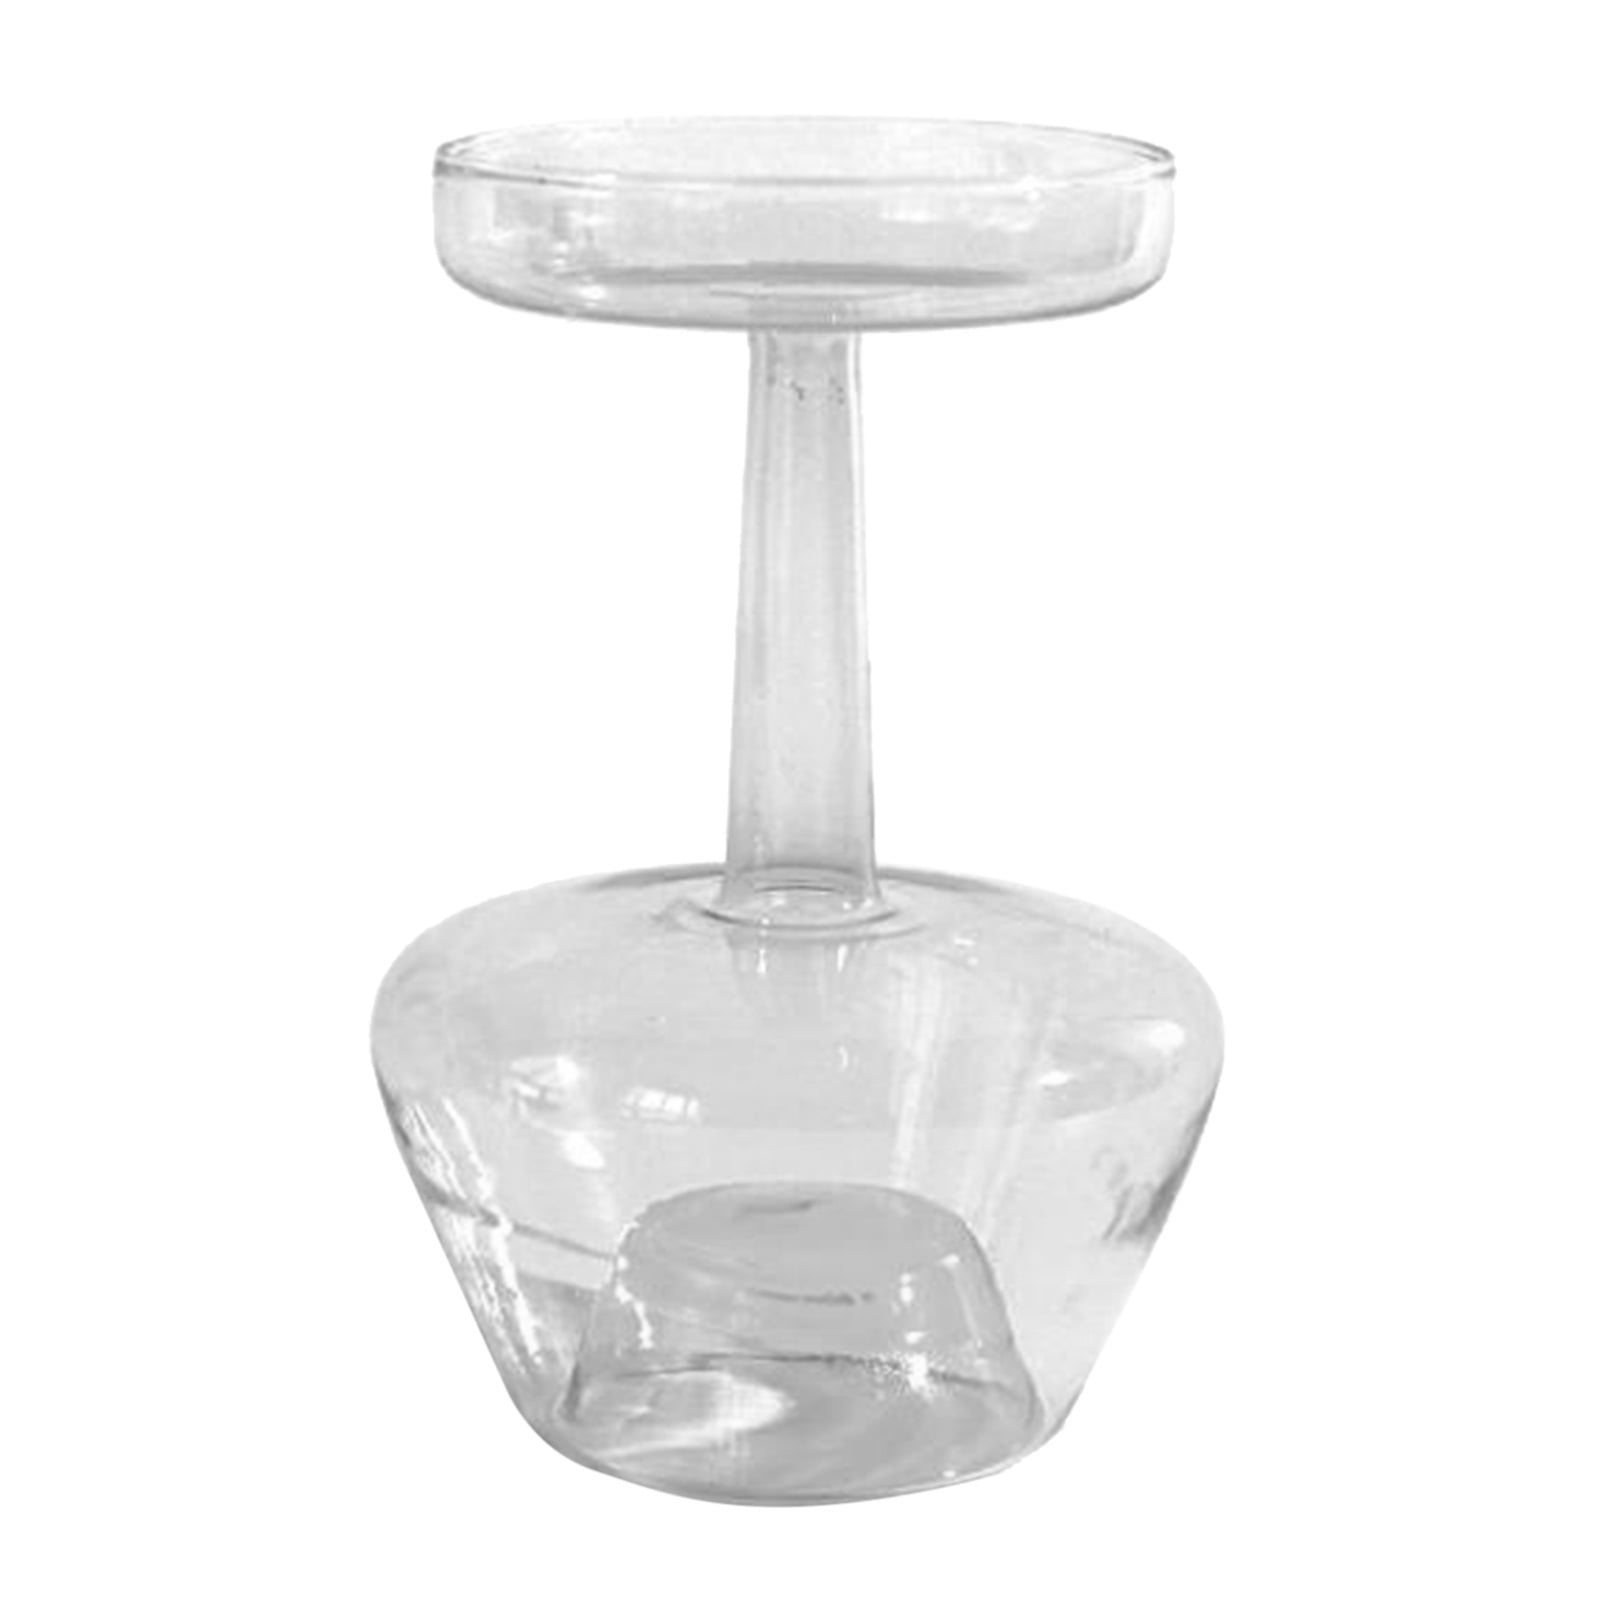 Modern Glass Bubble Vase Hydroponics Terrariums Container Flowers Arrangement